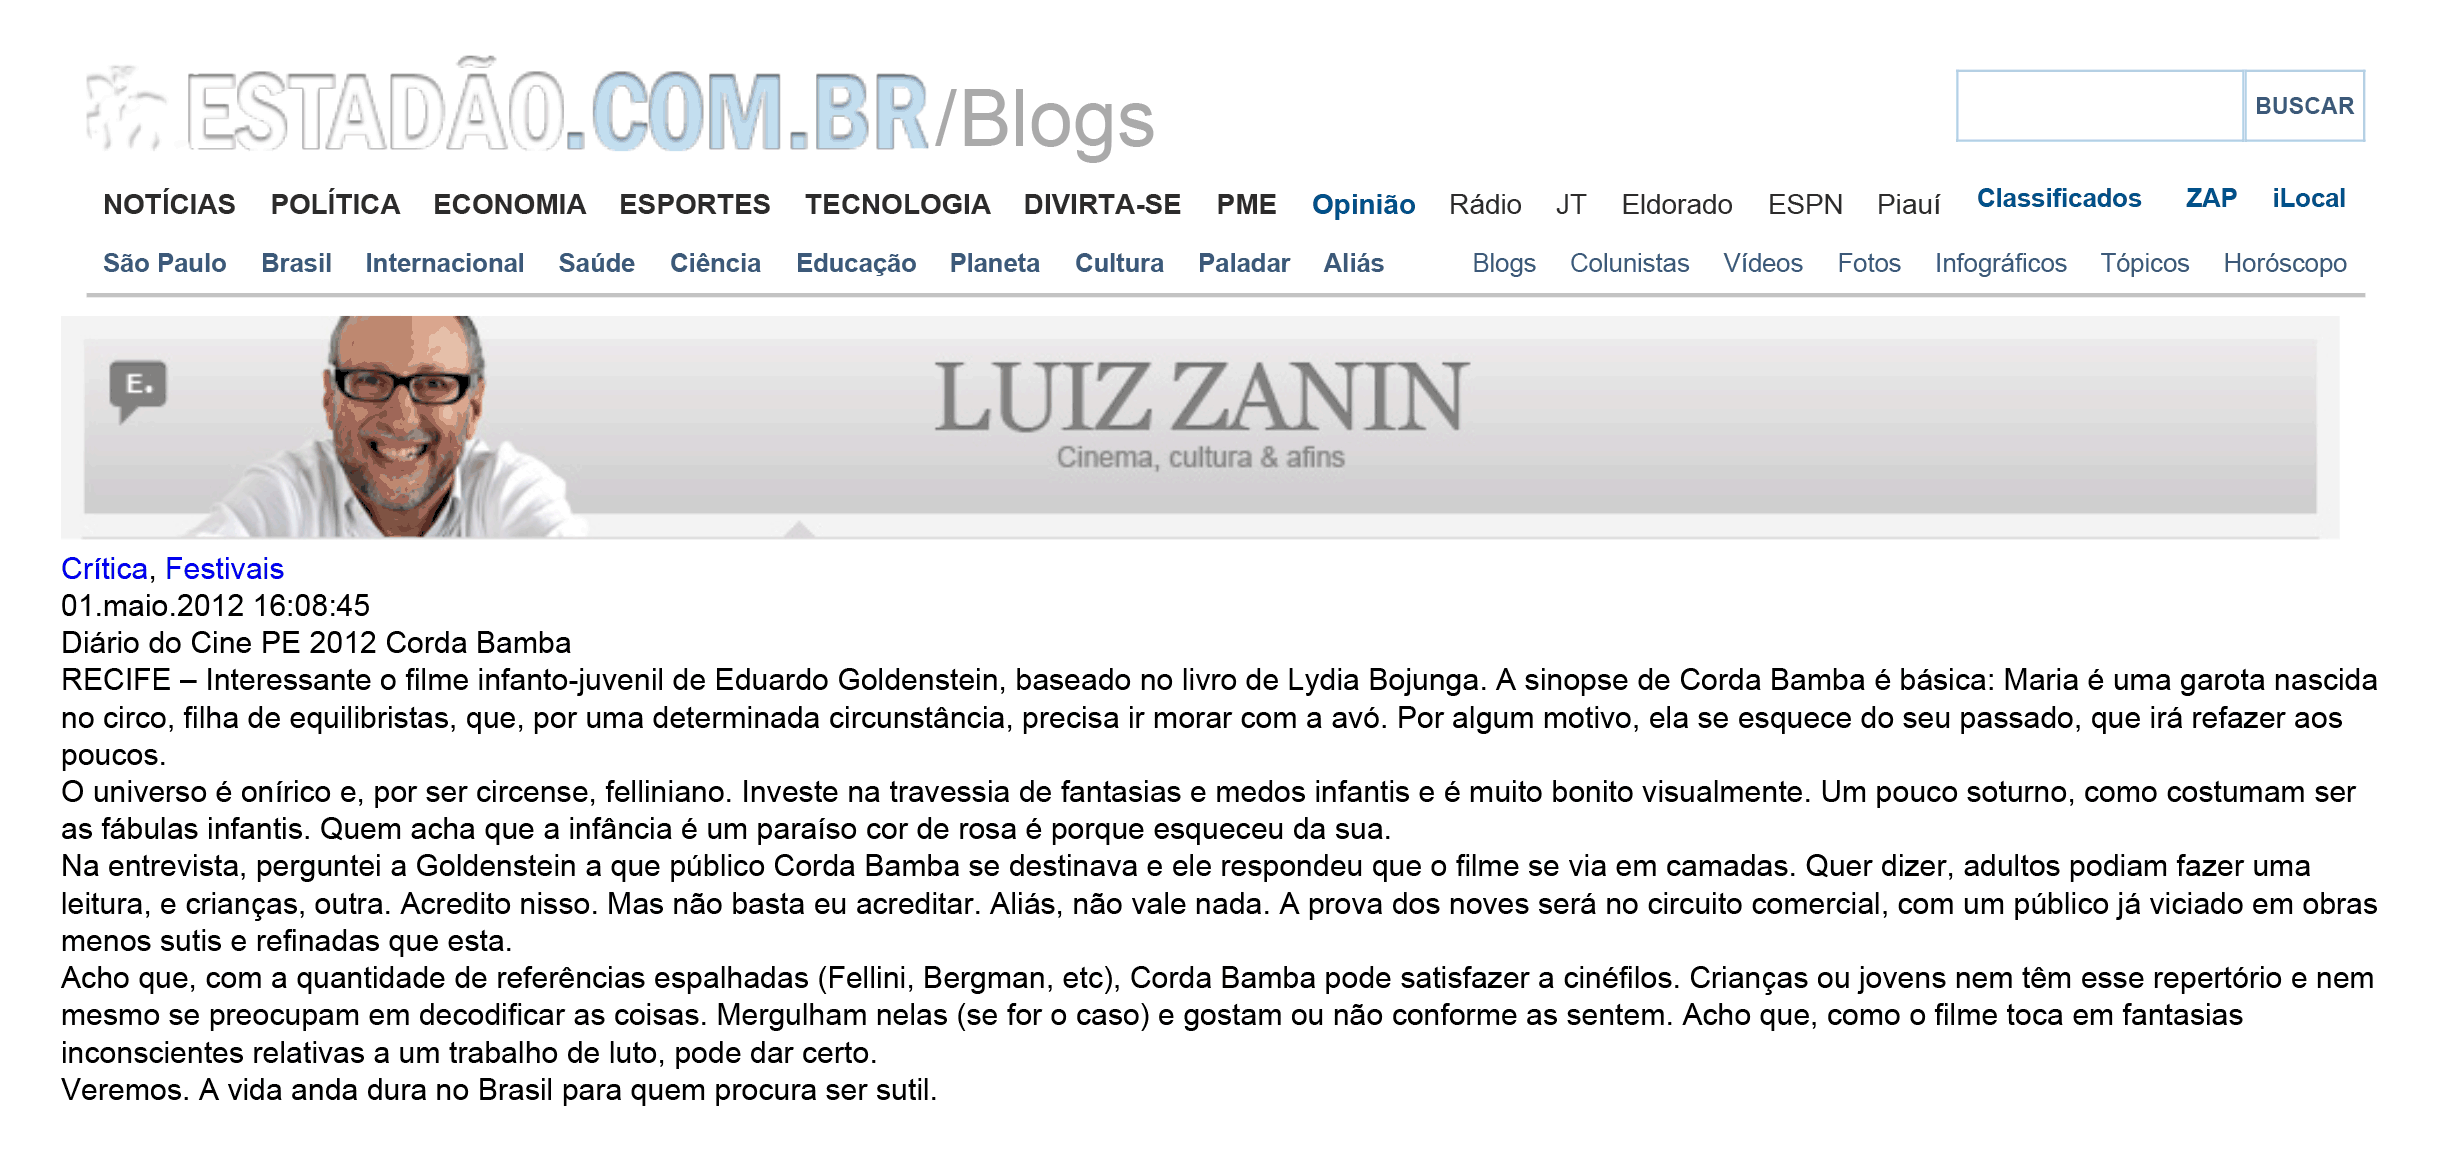 O Estado de São Paulo - Coluna do Luiz Zanin | mai. 2012